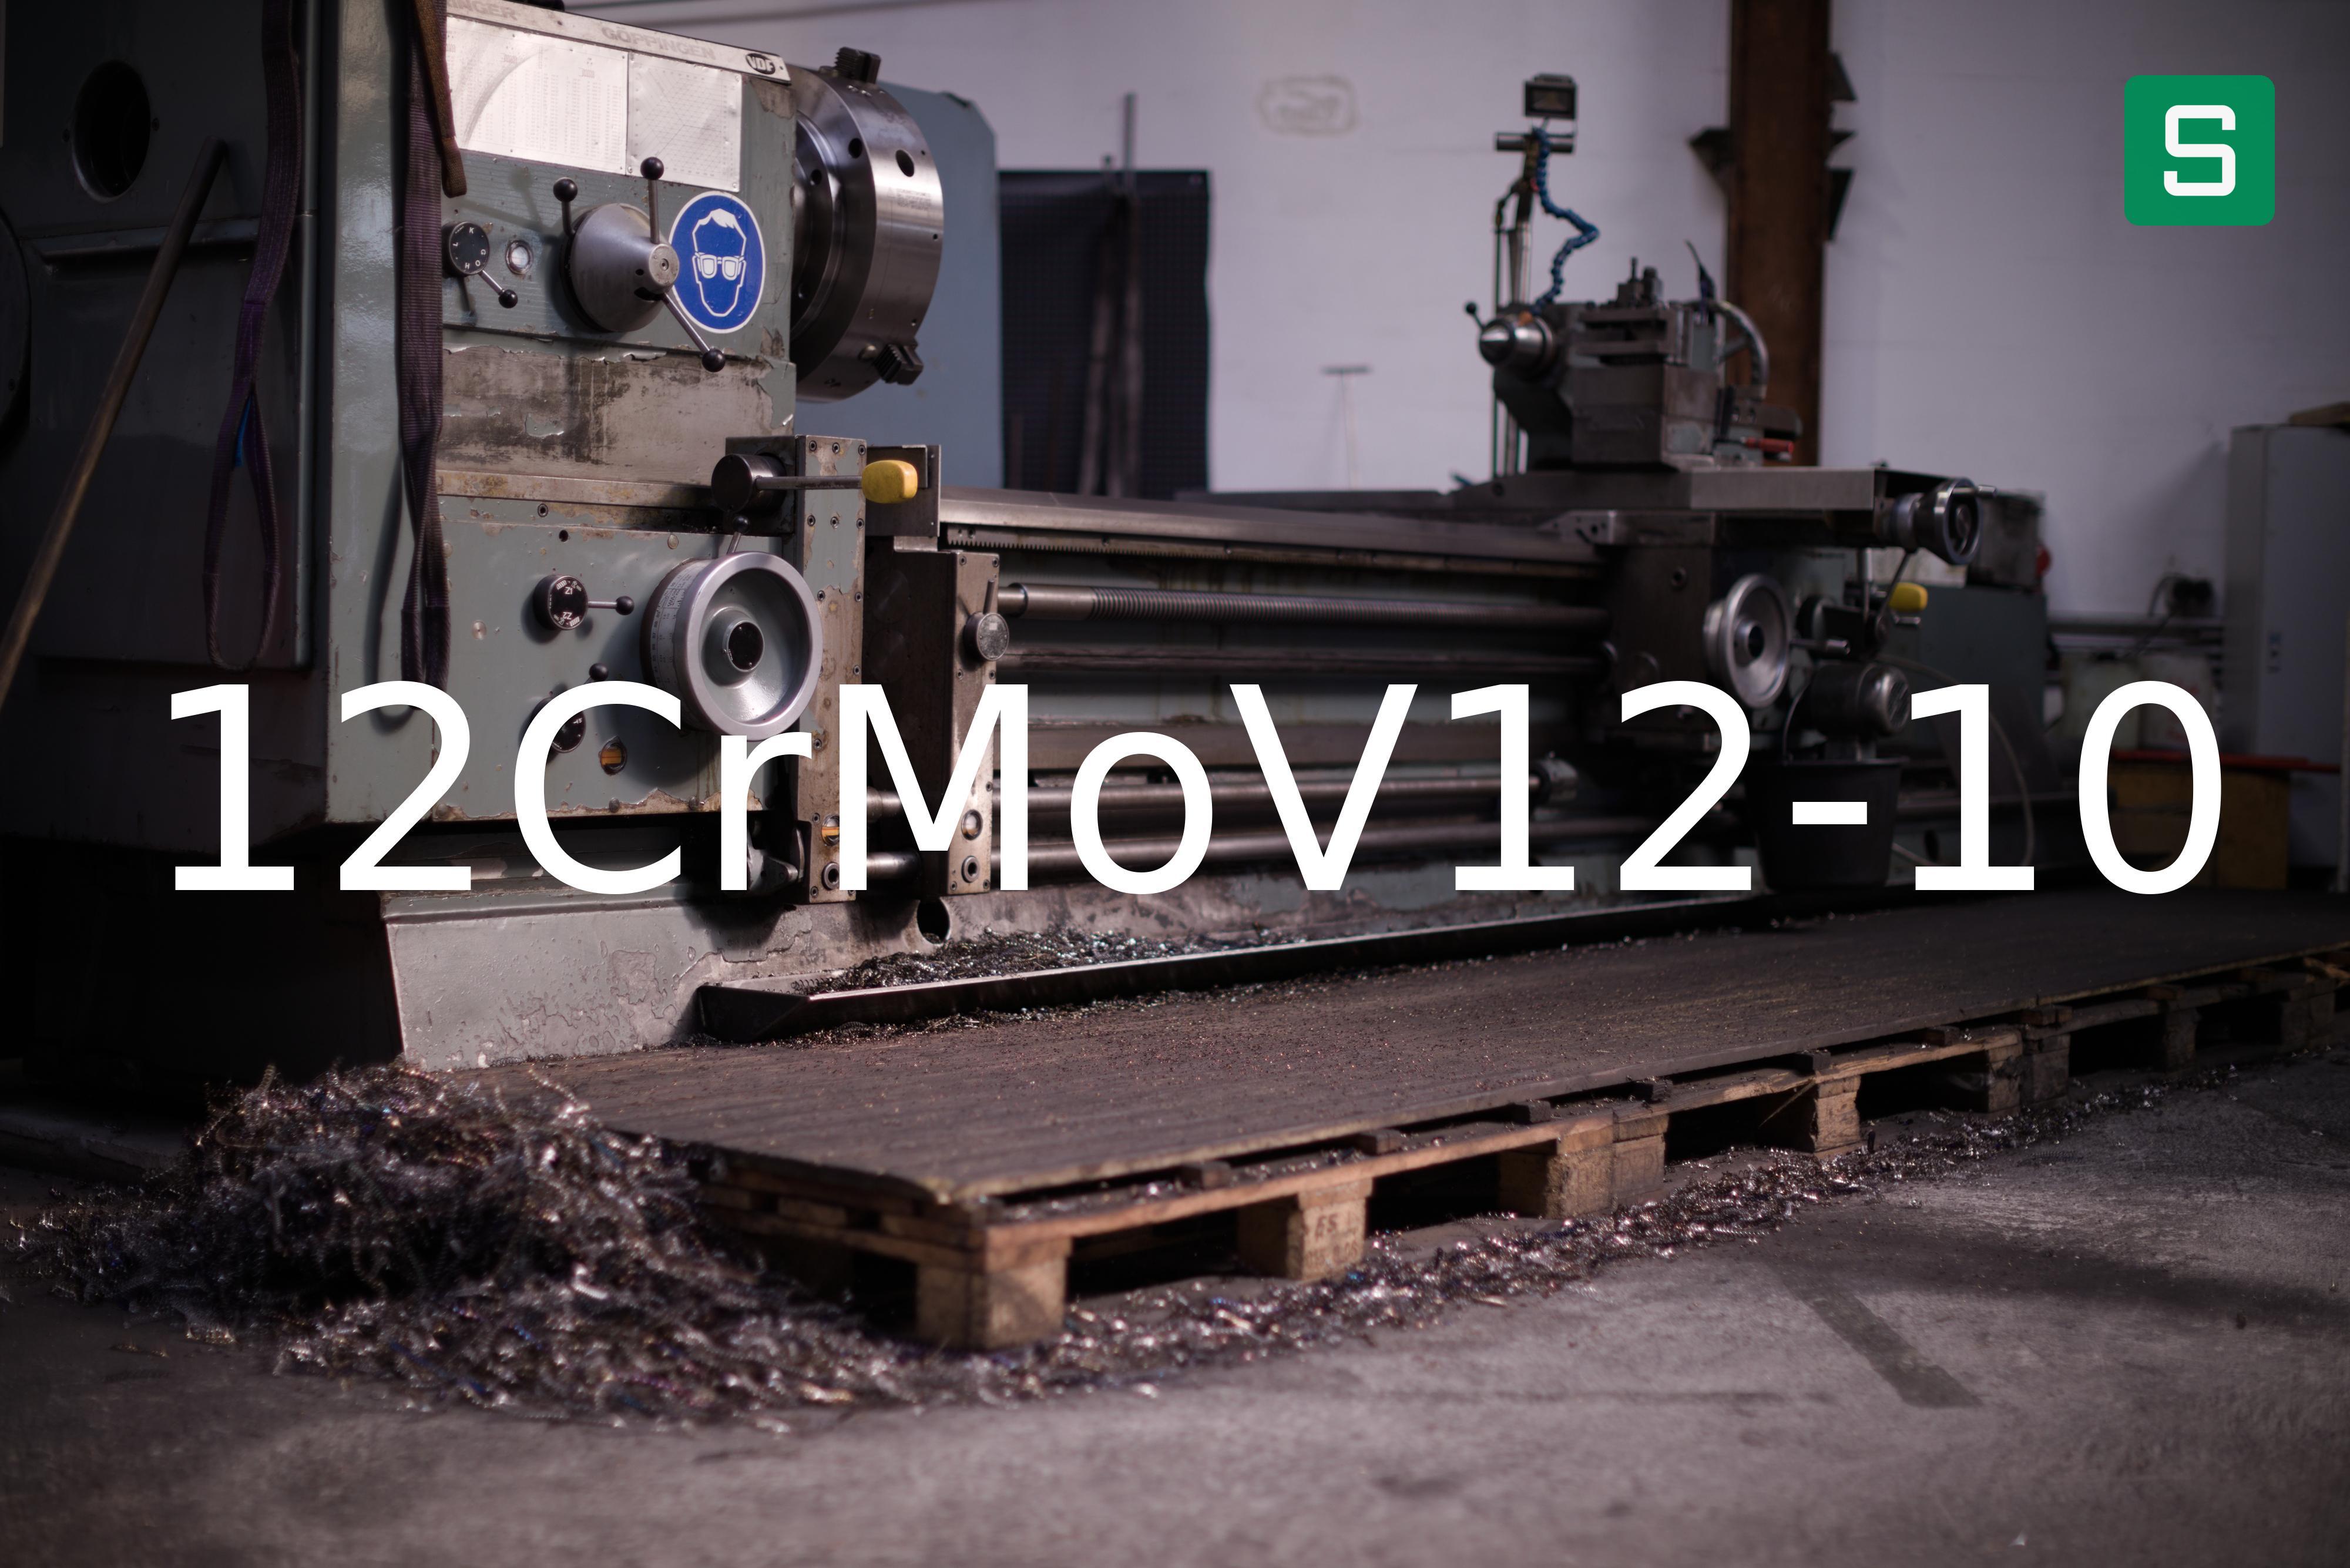 Steel Material: 12CrMoV12-10